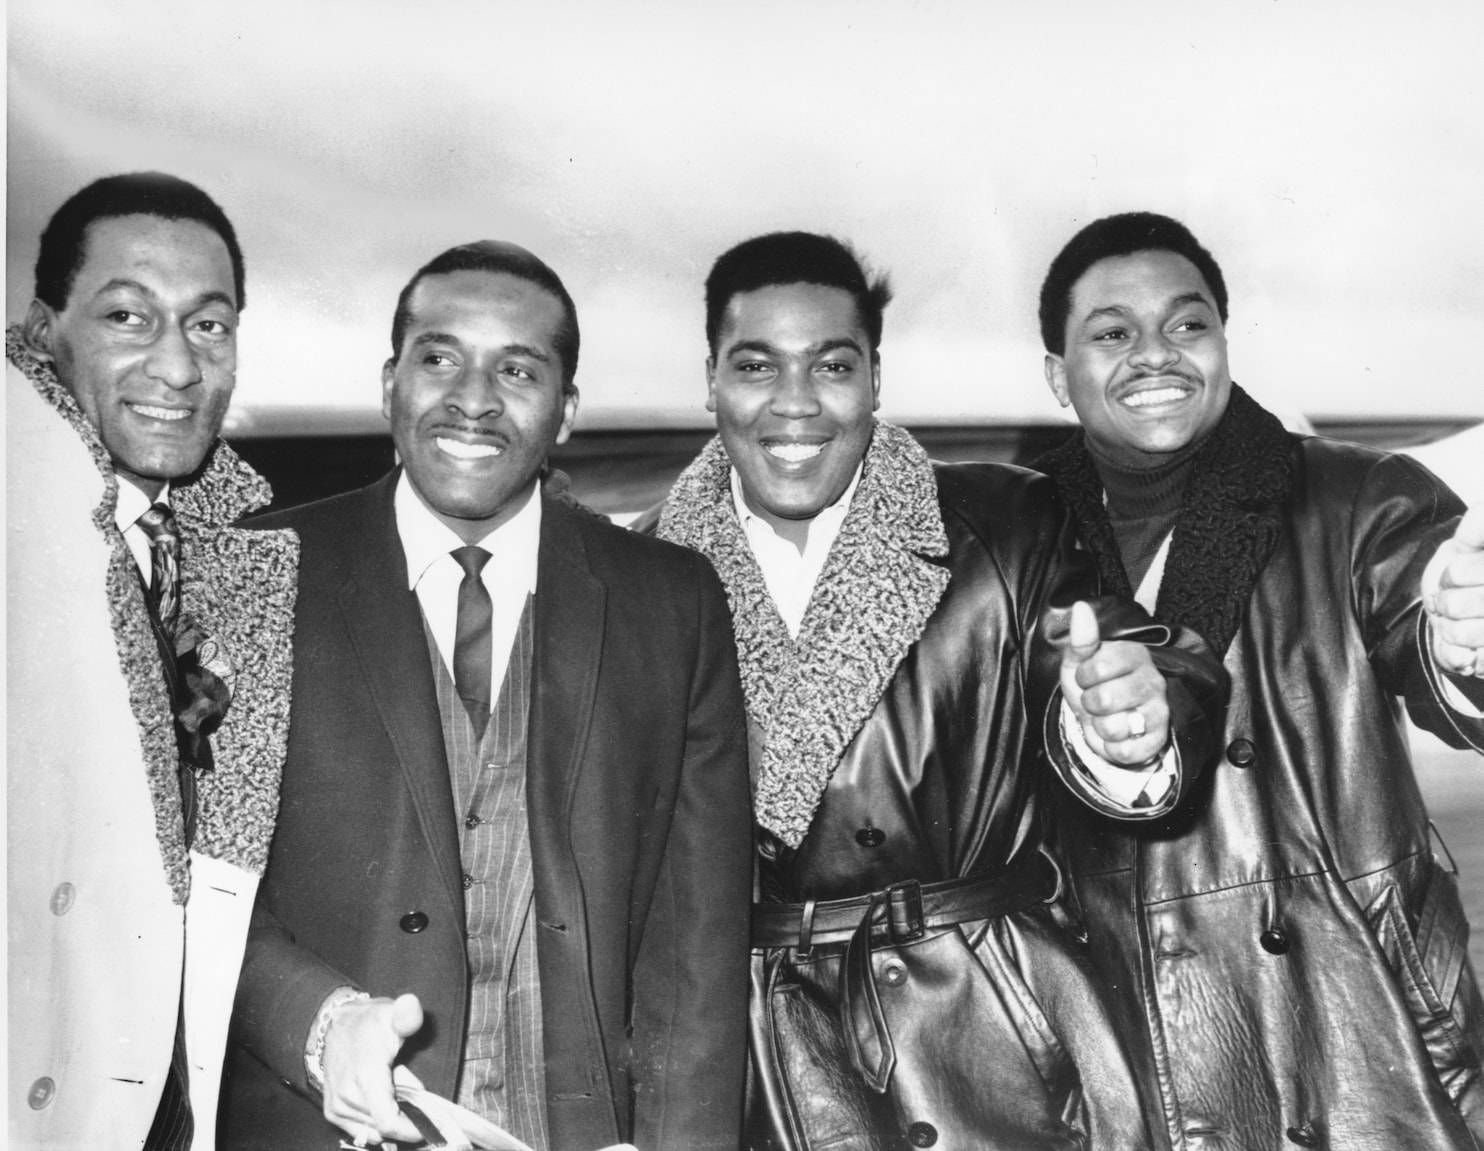 American Vocal Quartet Four Tops 1966 Portrait Wallpaper